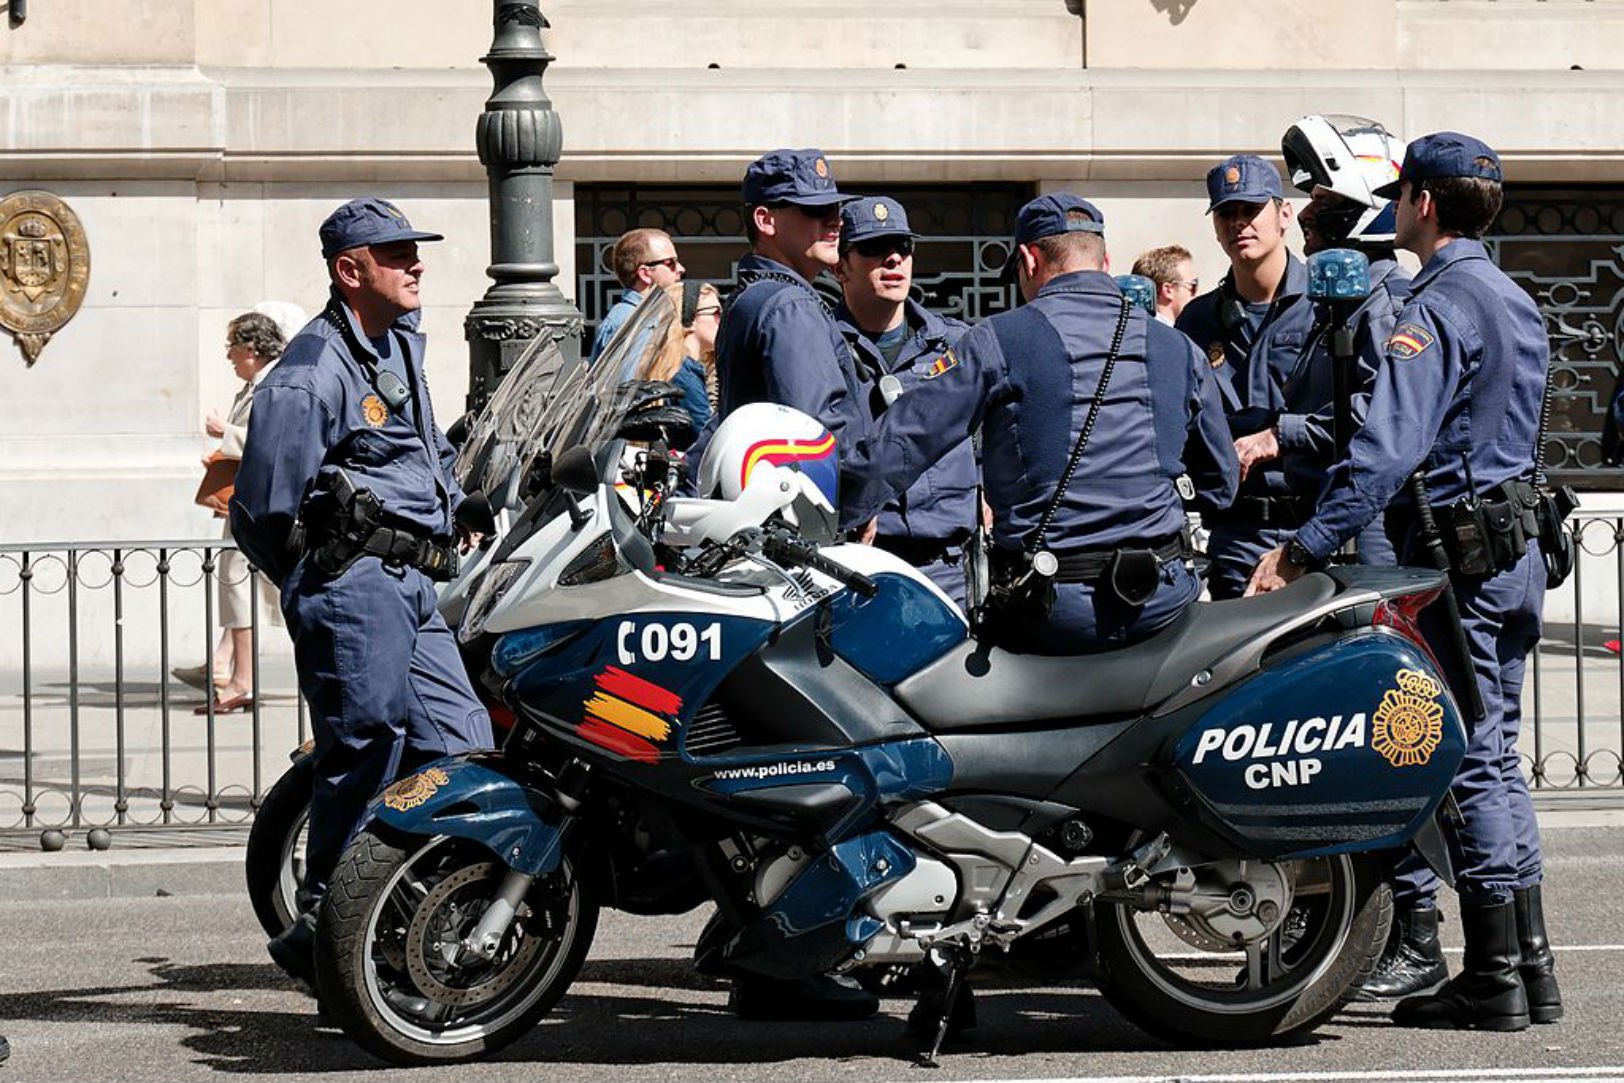 La policia espanyola dona les gràcies en vuit idiomes, de quin se n'oblida?